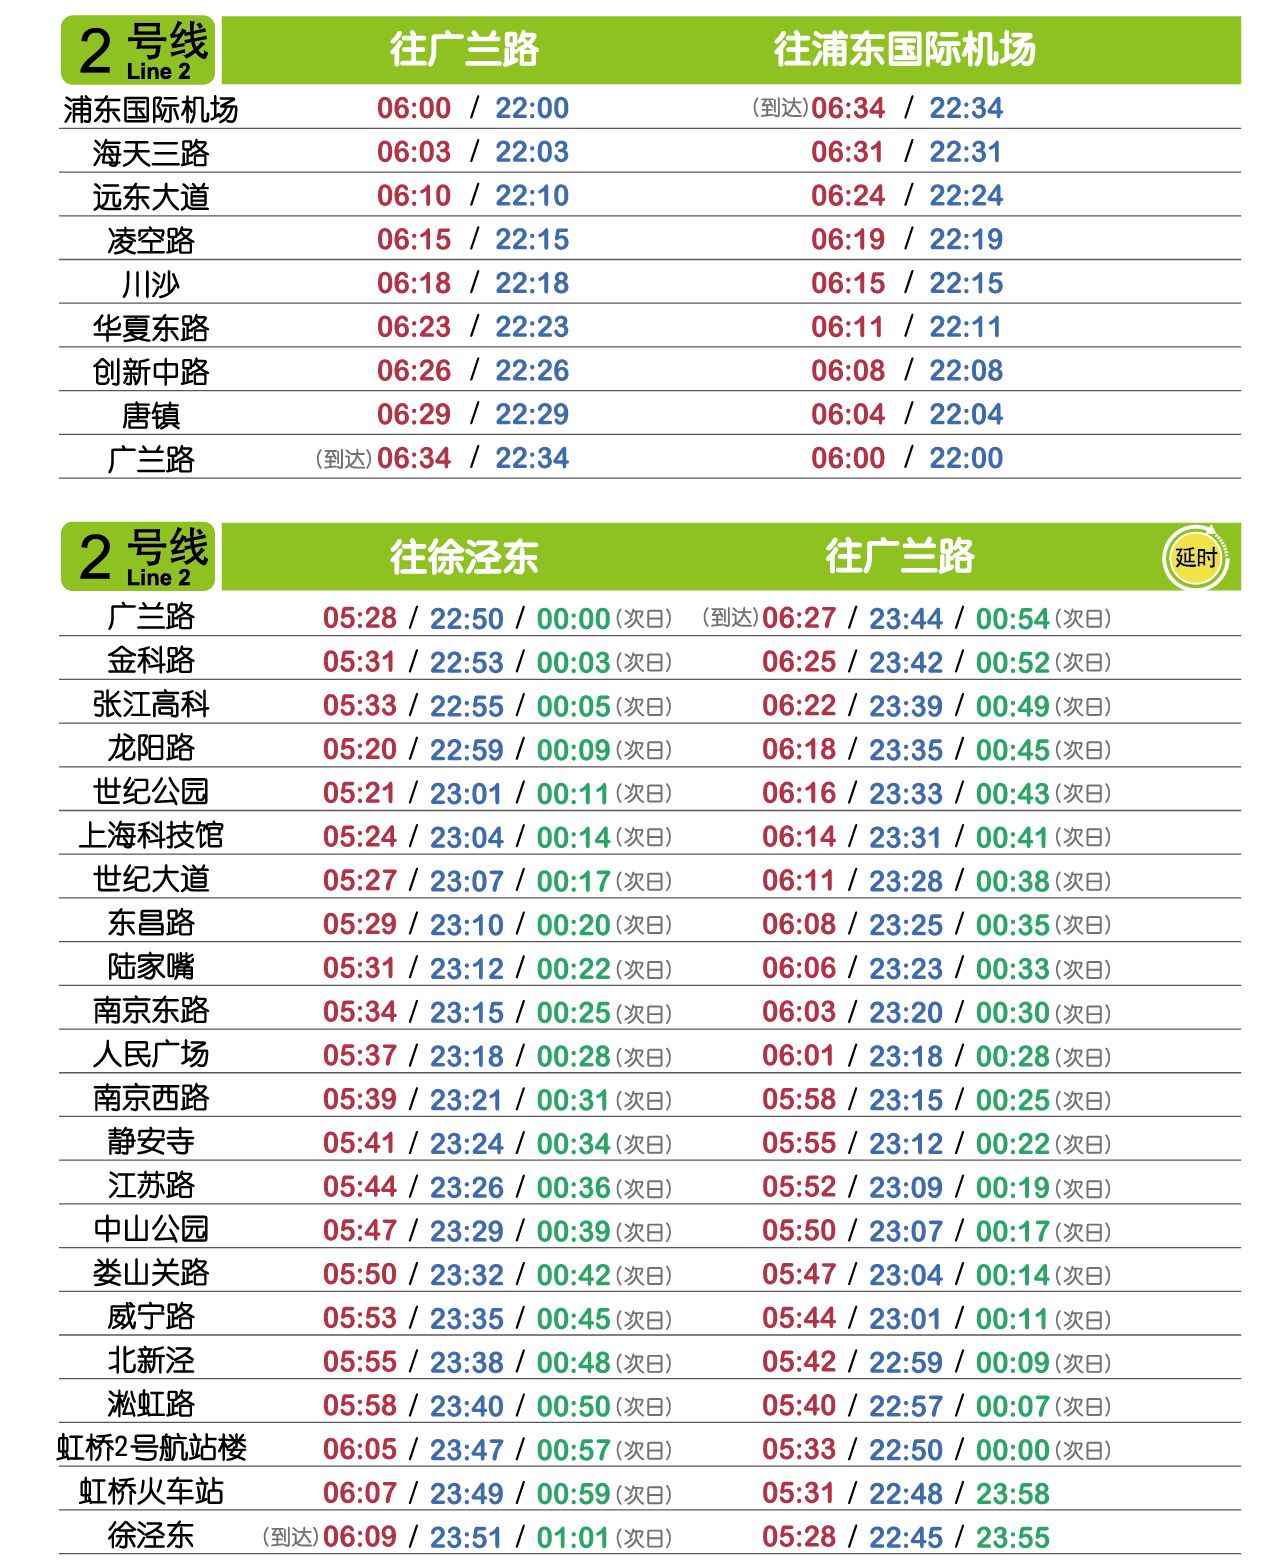 2018最新版上海地铁「首末班车时刻表」 15条